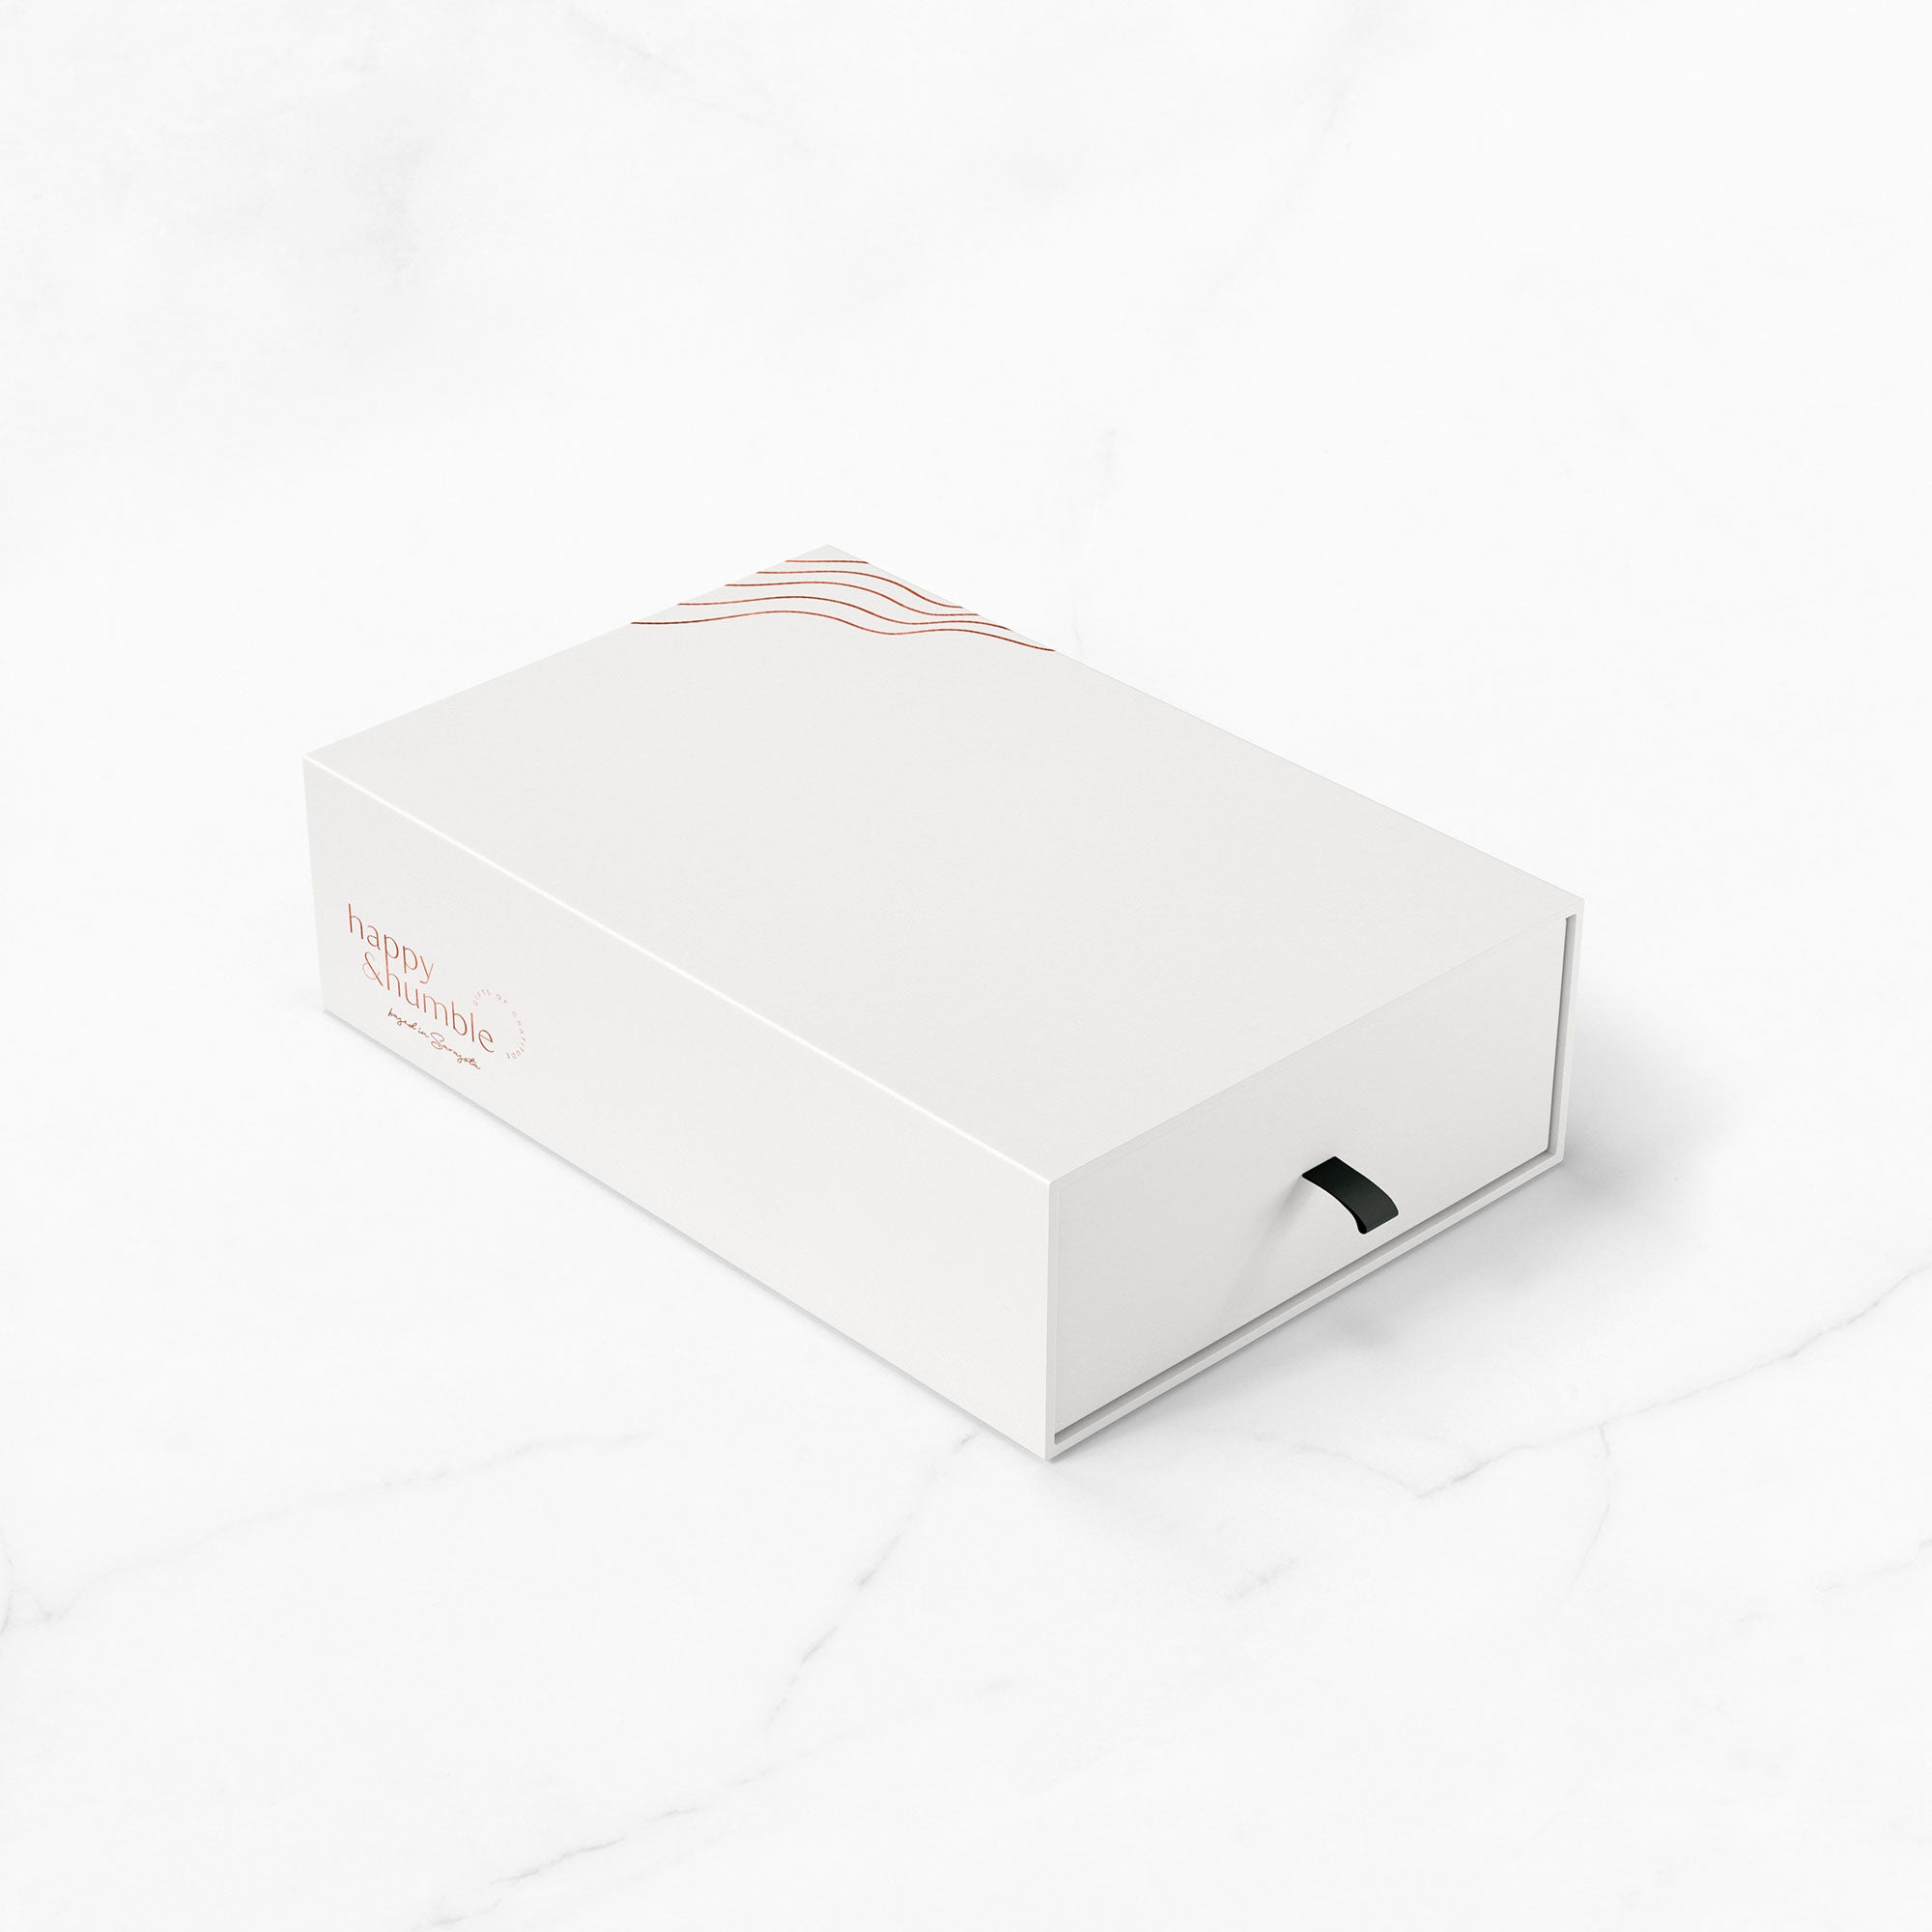 Karolina Król Studio luxury gift box packaging design